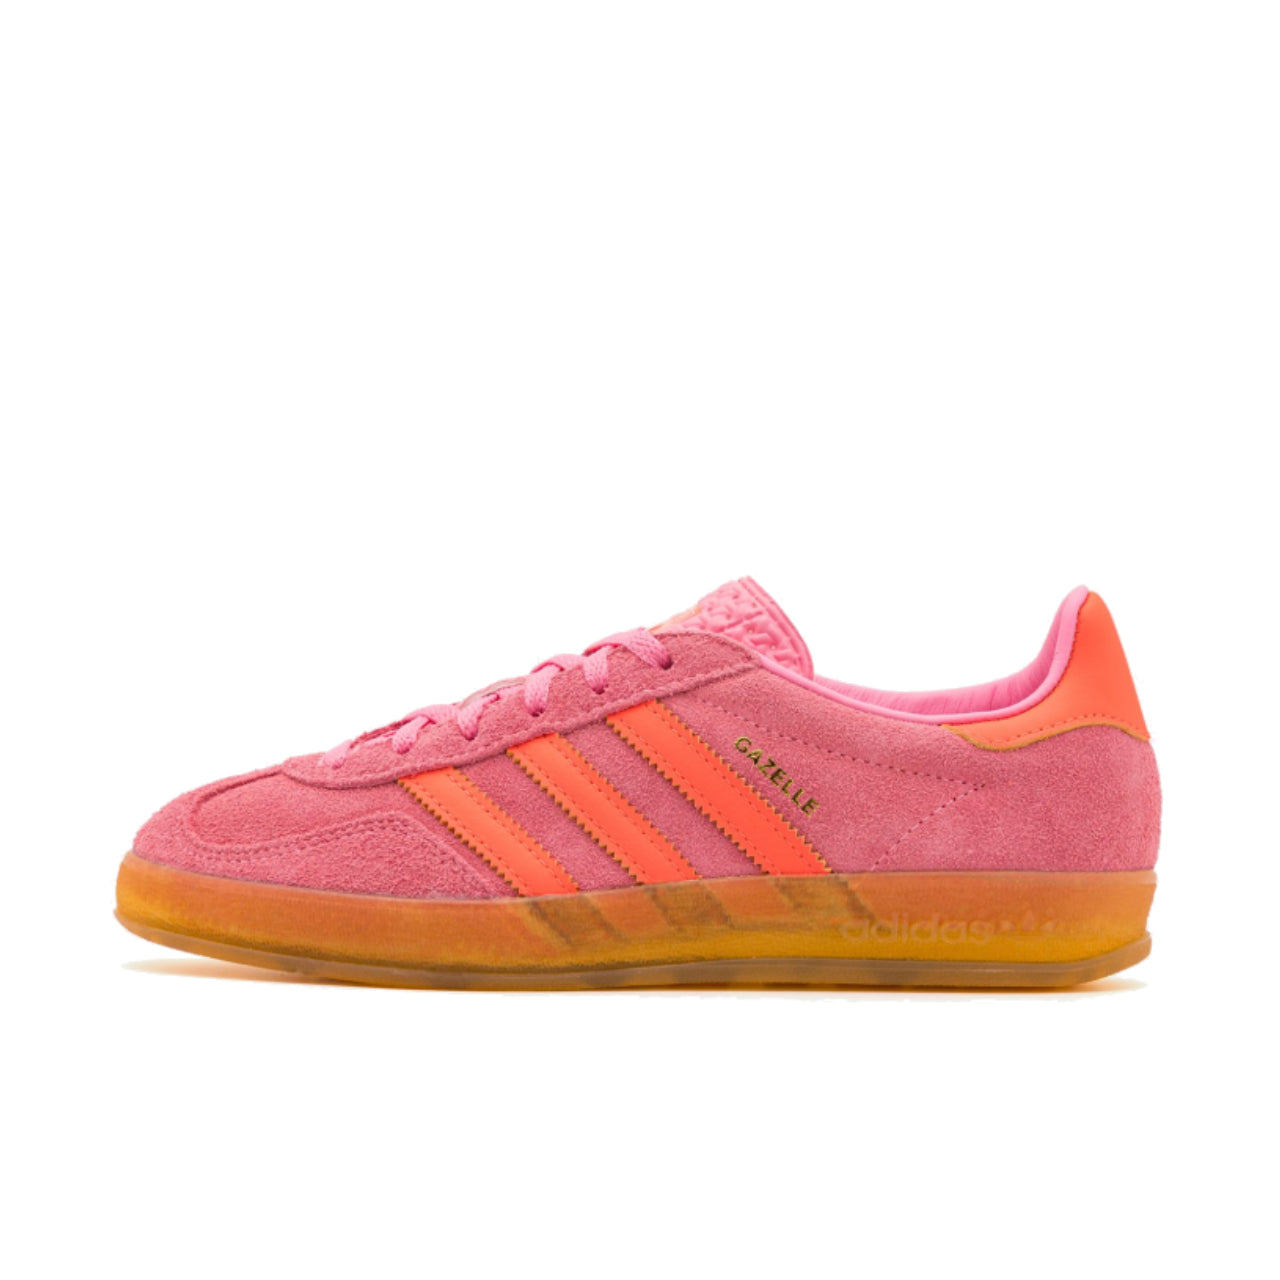 adidas Gazelle Indoor Beam Pink - IE1058 - Left